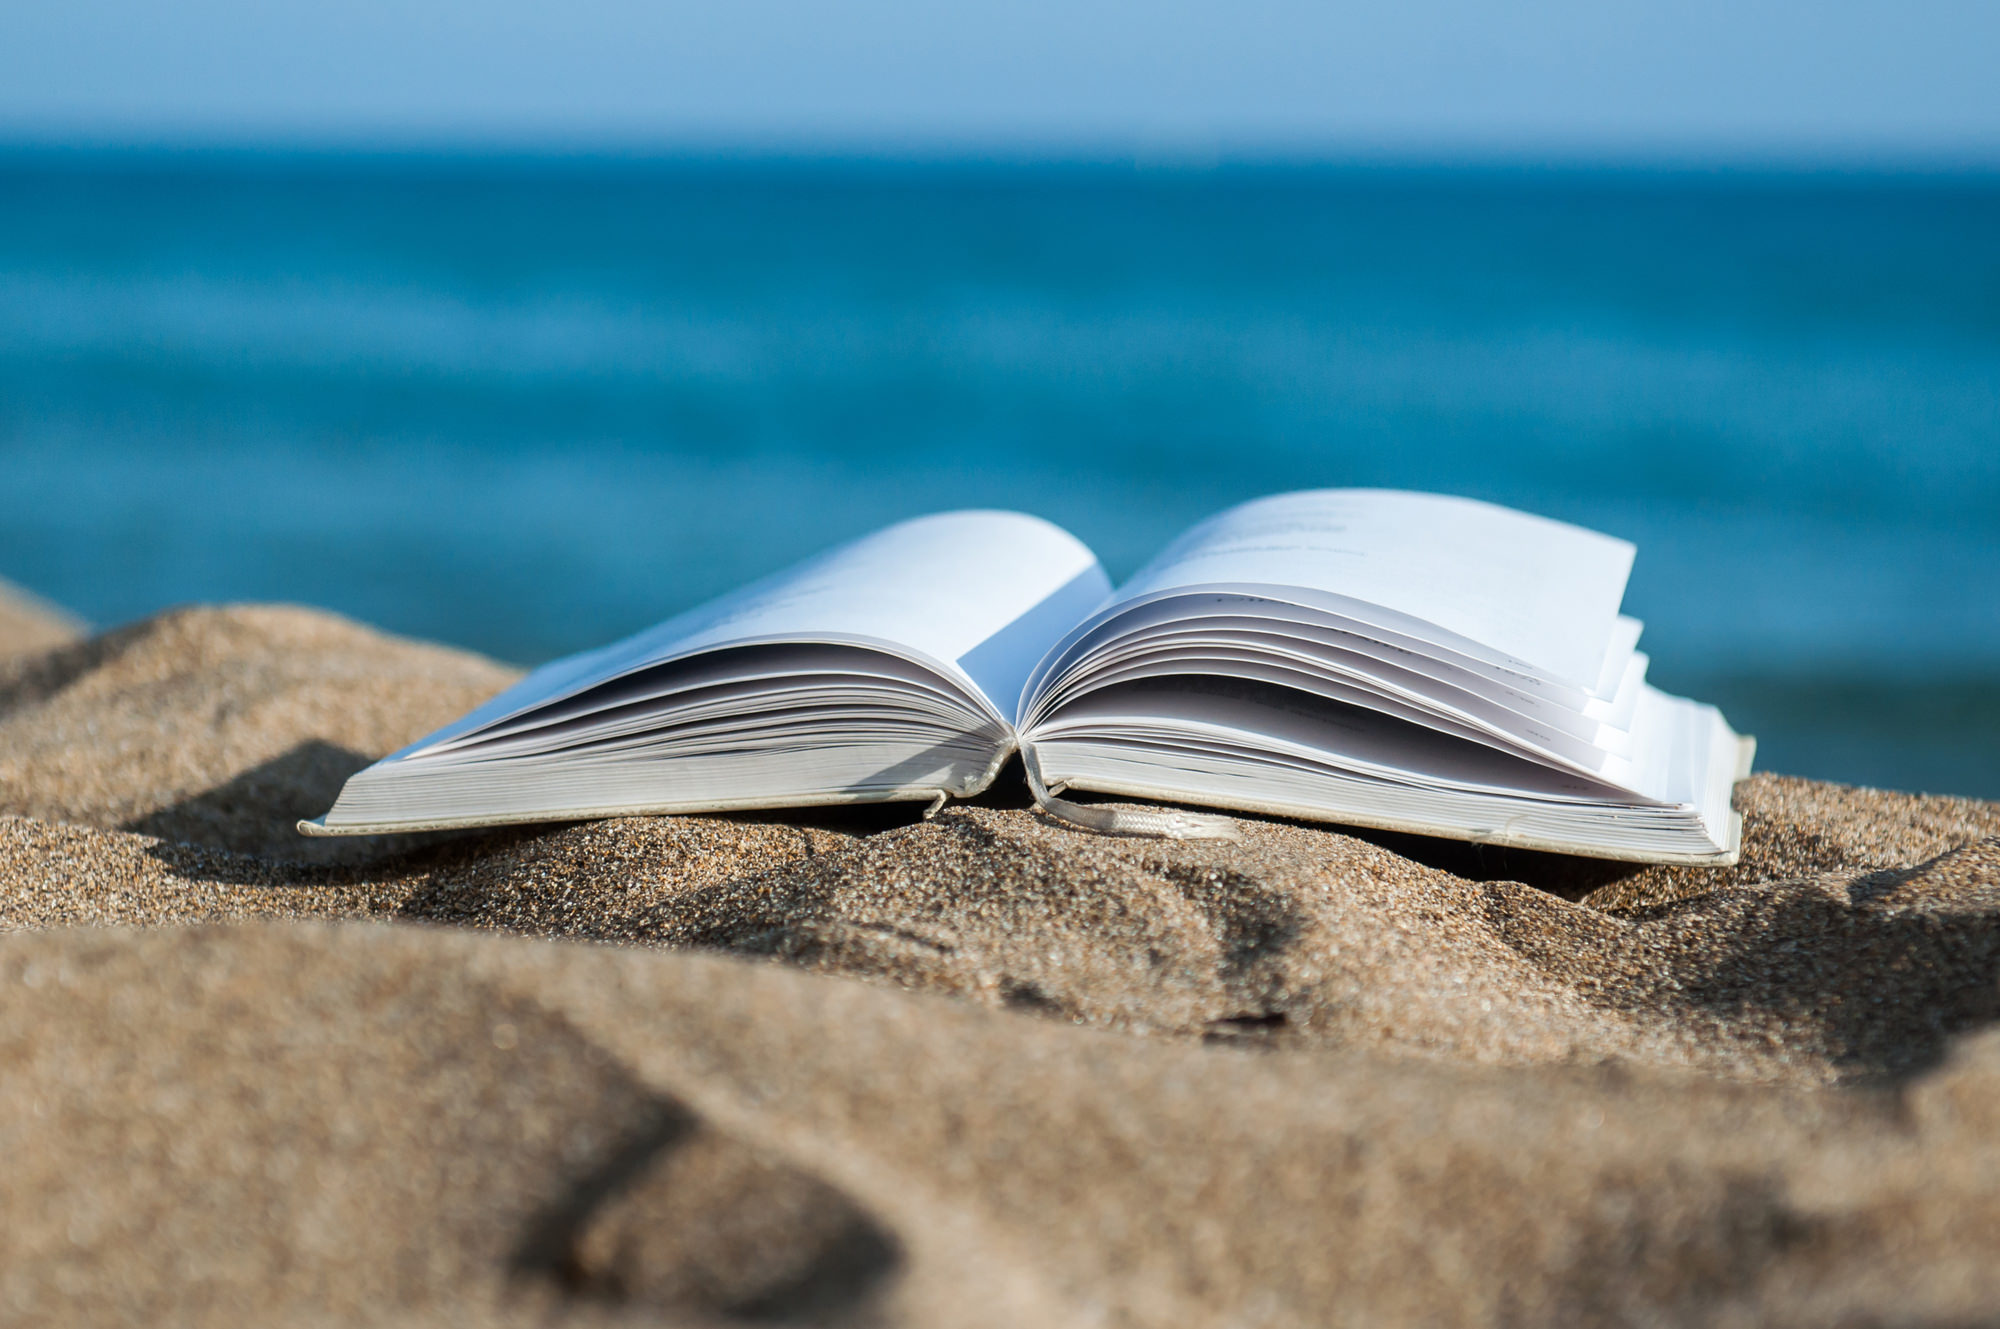 My summer book. Книга на берегу моря. Книга море. Чтение на пляже. Книга на фоне моря.